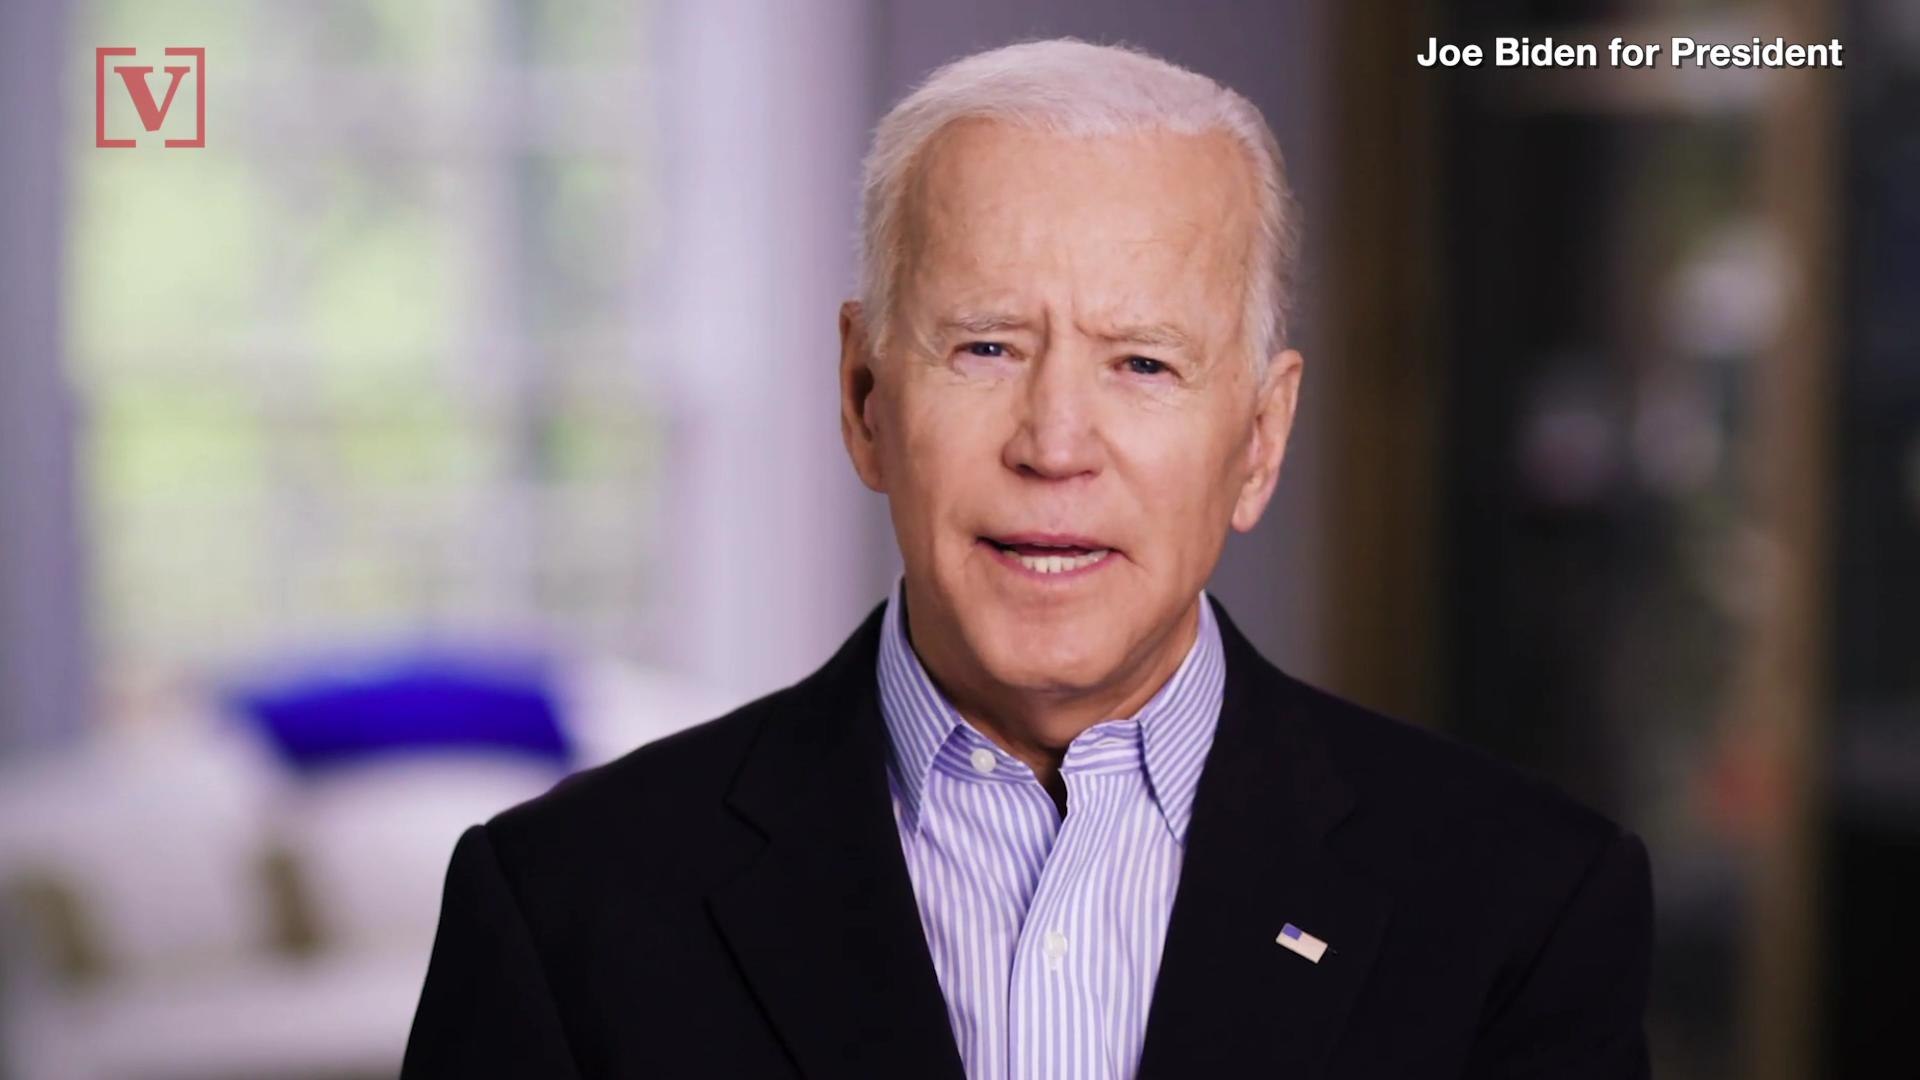 Joe Biden Is Running For President in 2020: 'America Is An Idea'